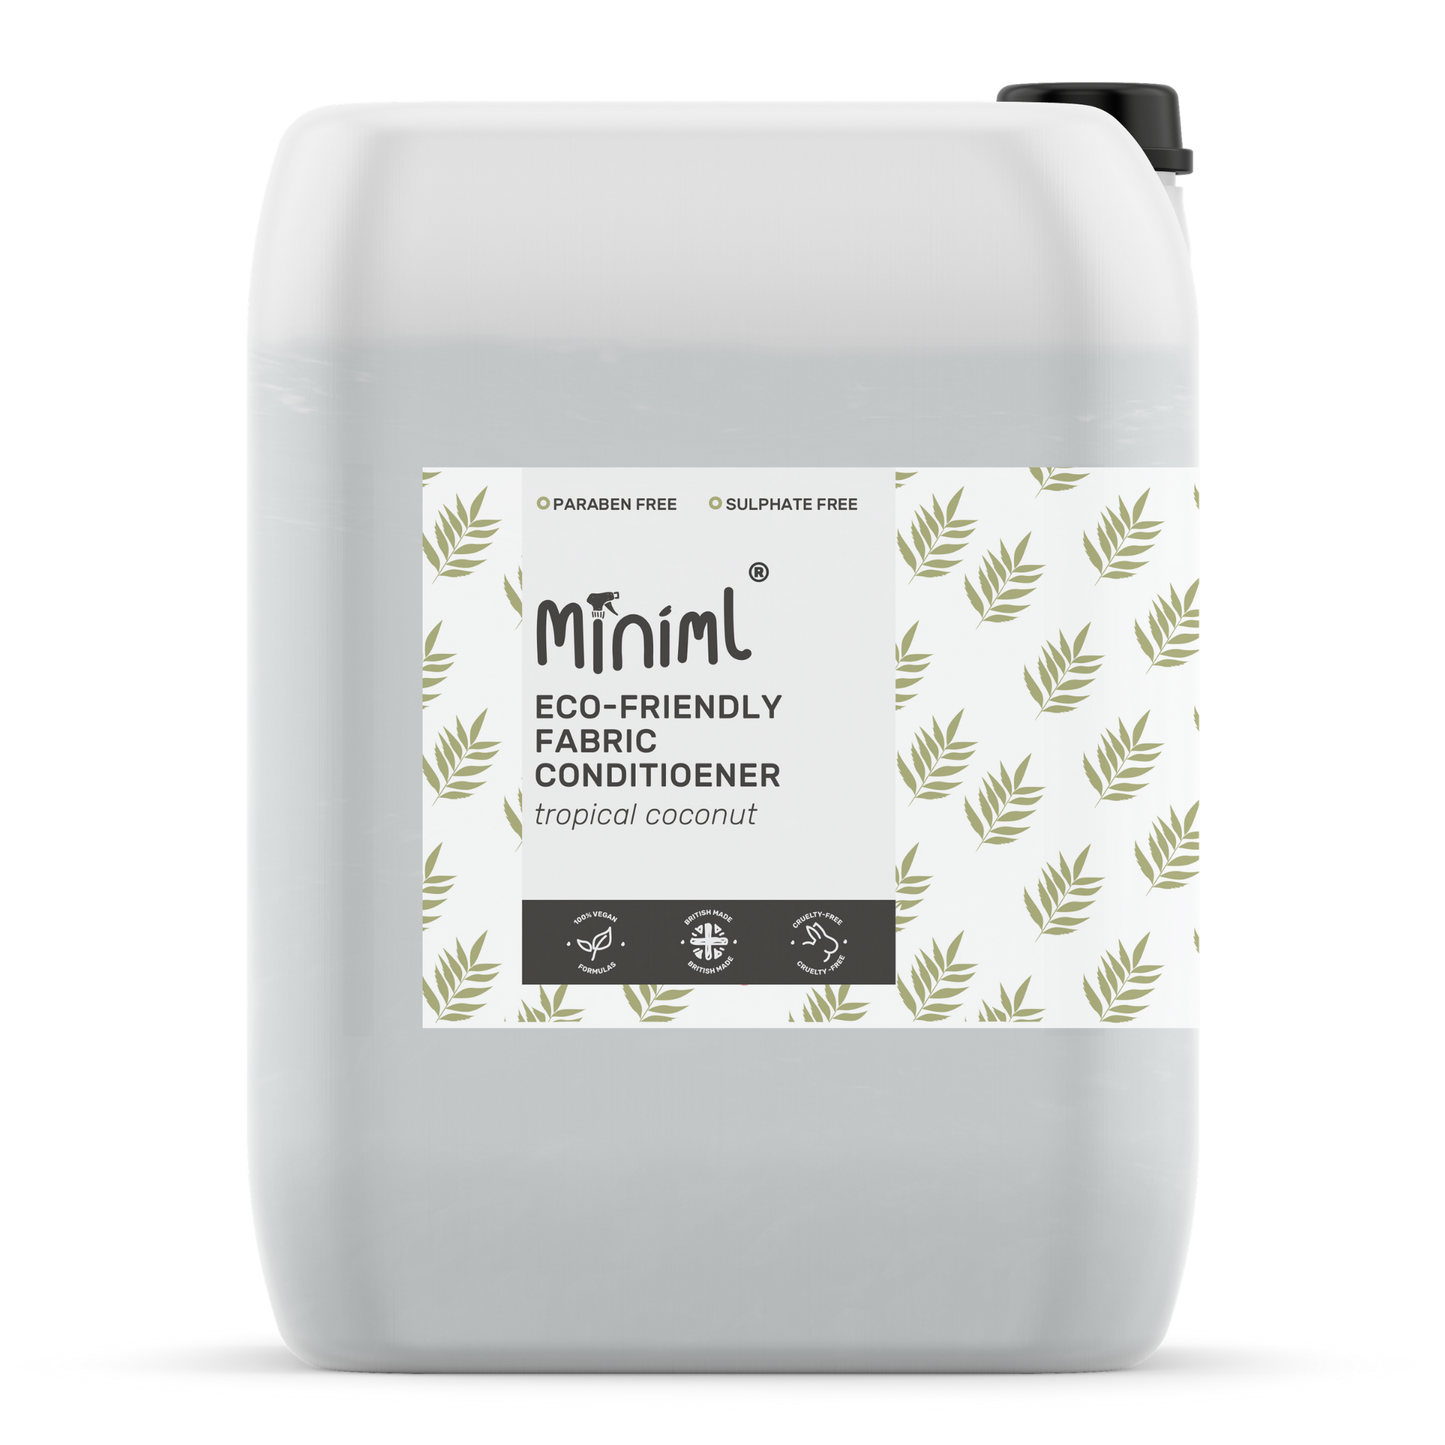 Miniml Fabric Conditioner - 20L